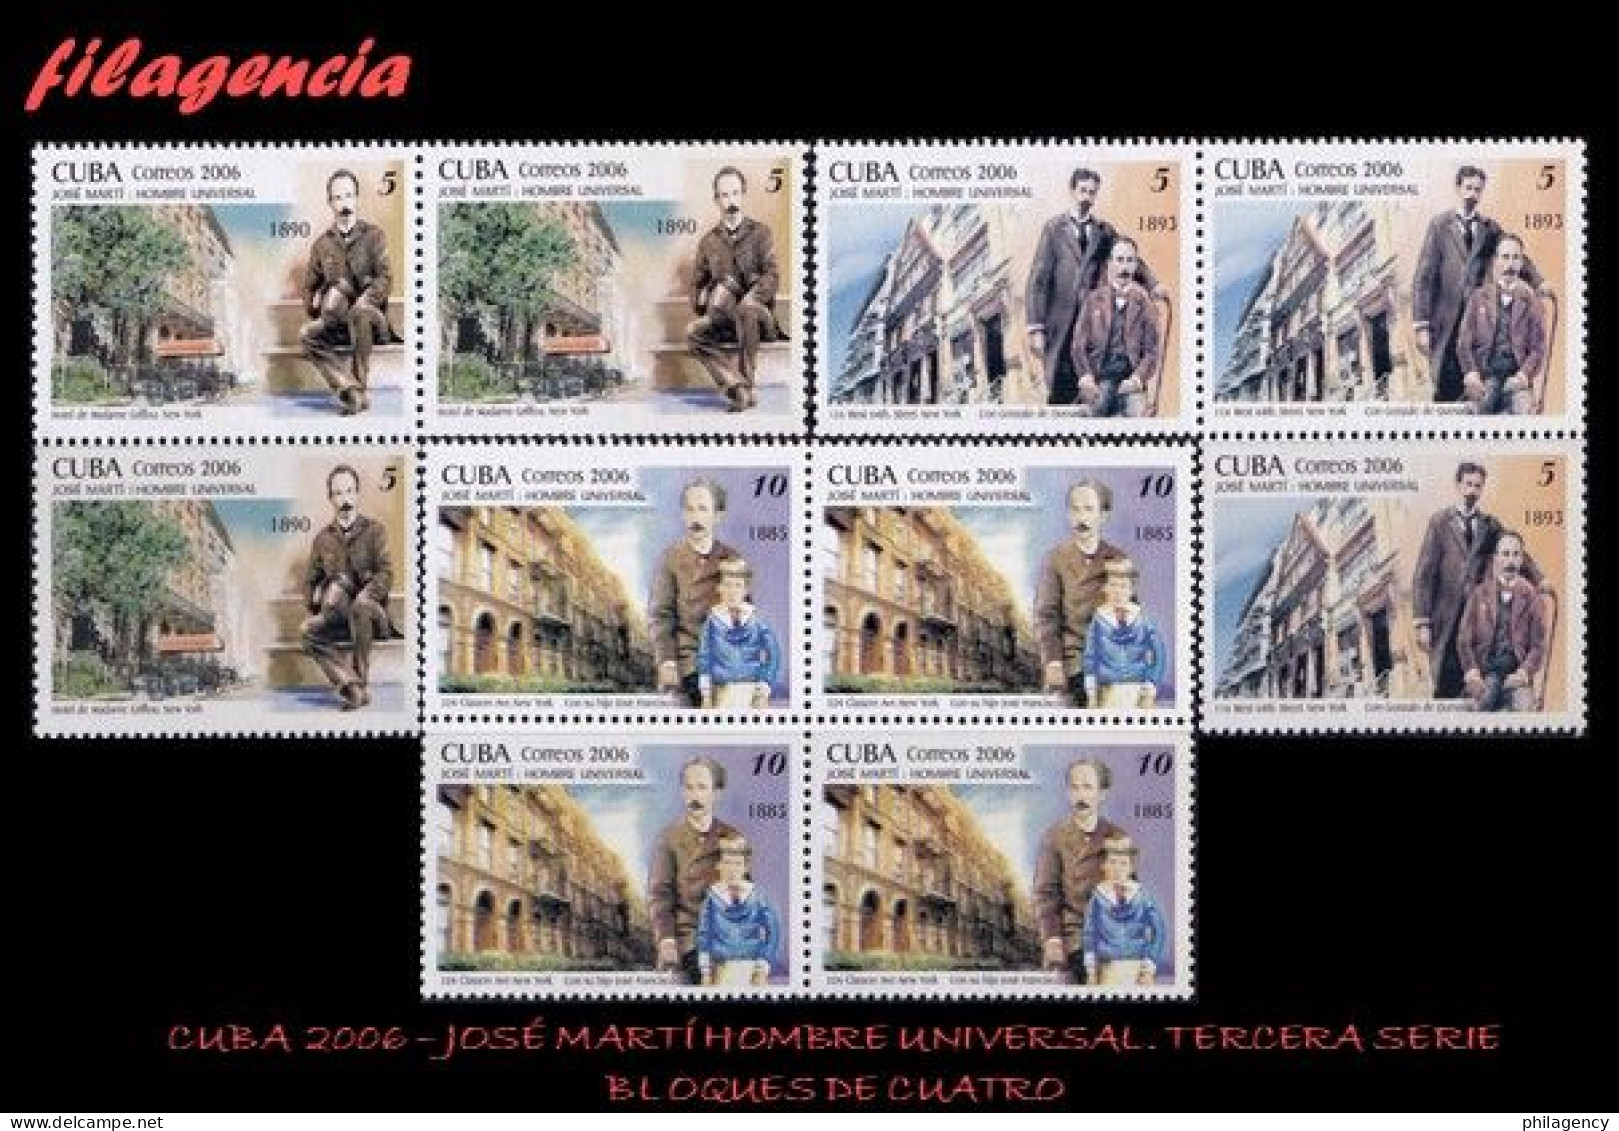 CUBA. BLOQUES DE CUATRO. 2006-10 JOSÉ MARTÍ. HOMBRE UNIVERSAL. TERCERA SERIE - Nuevos